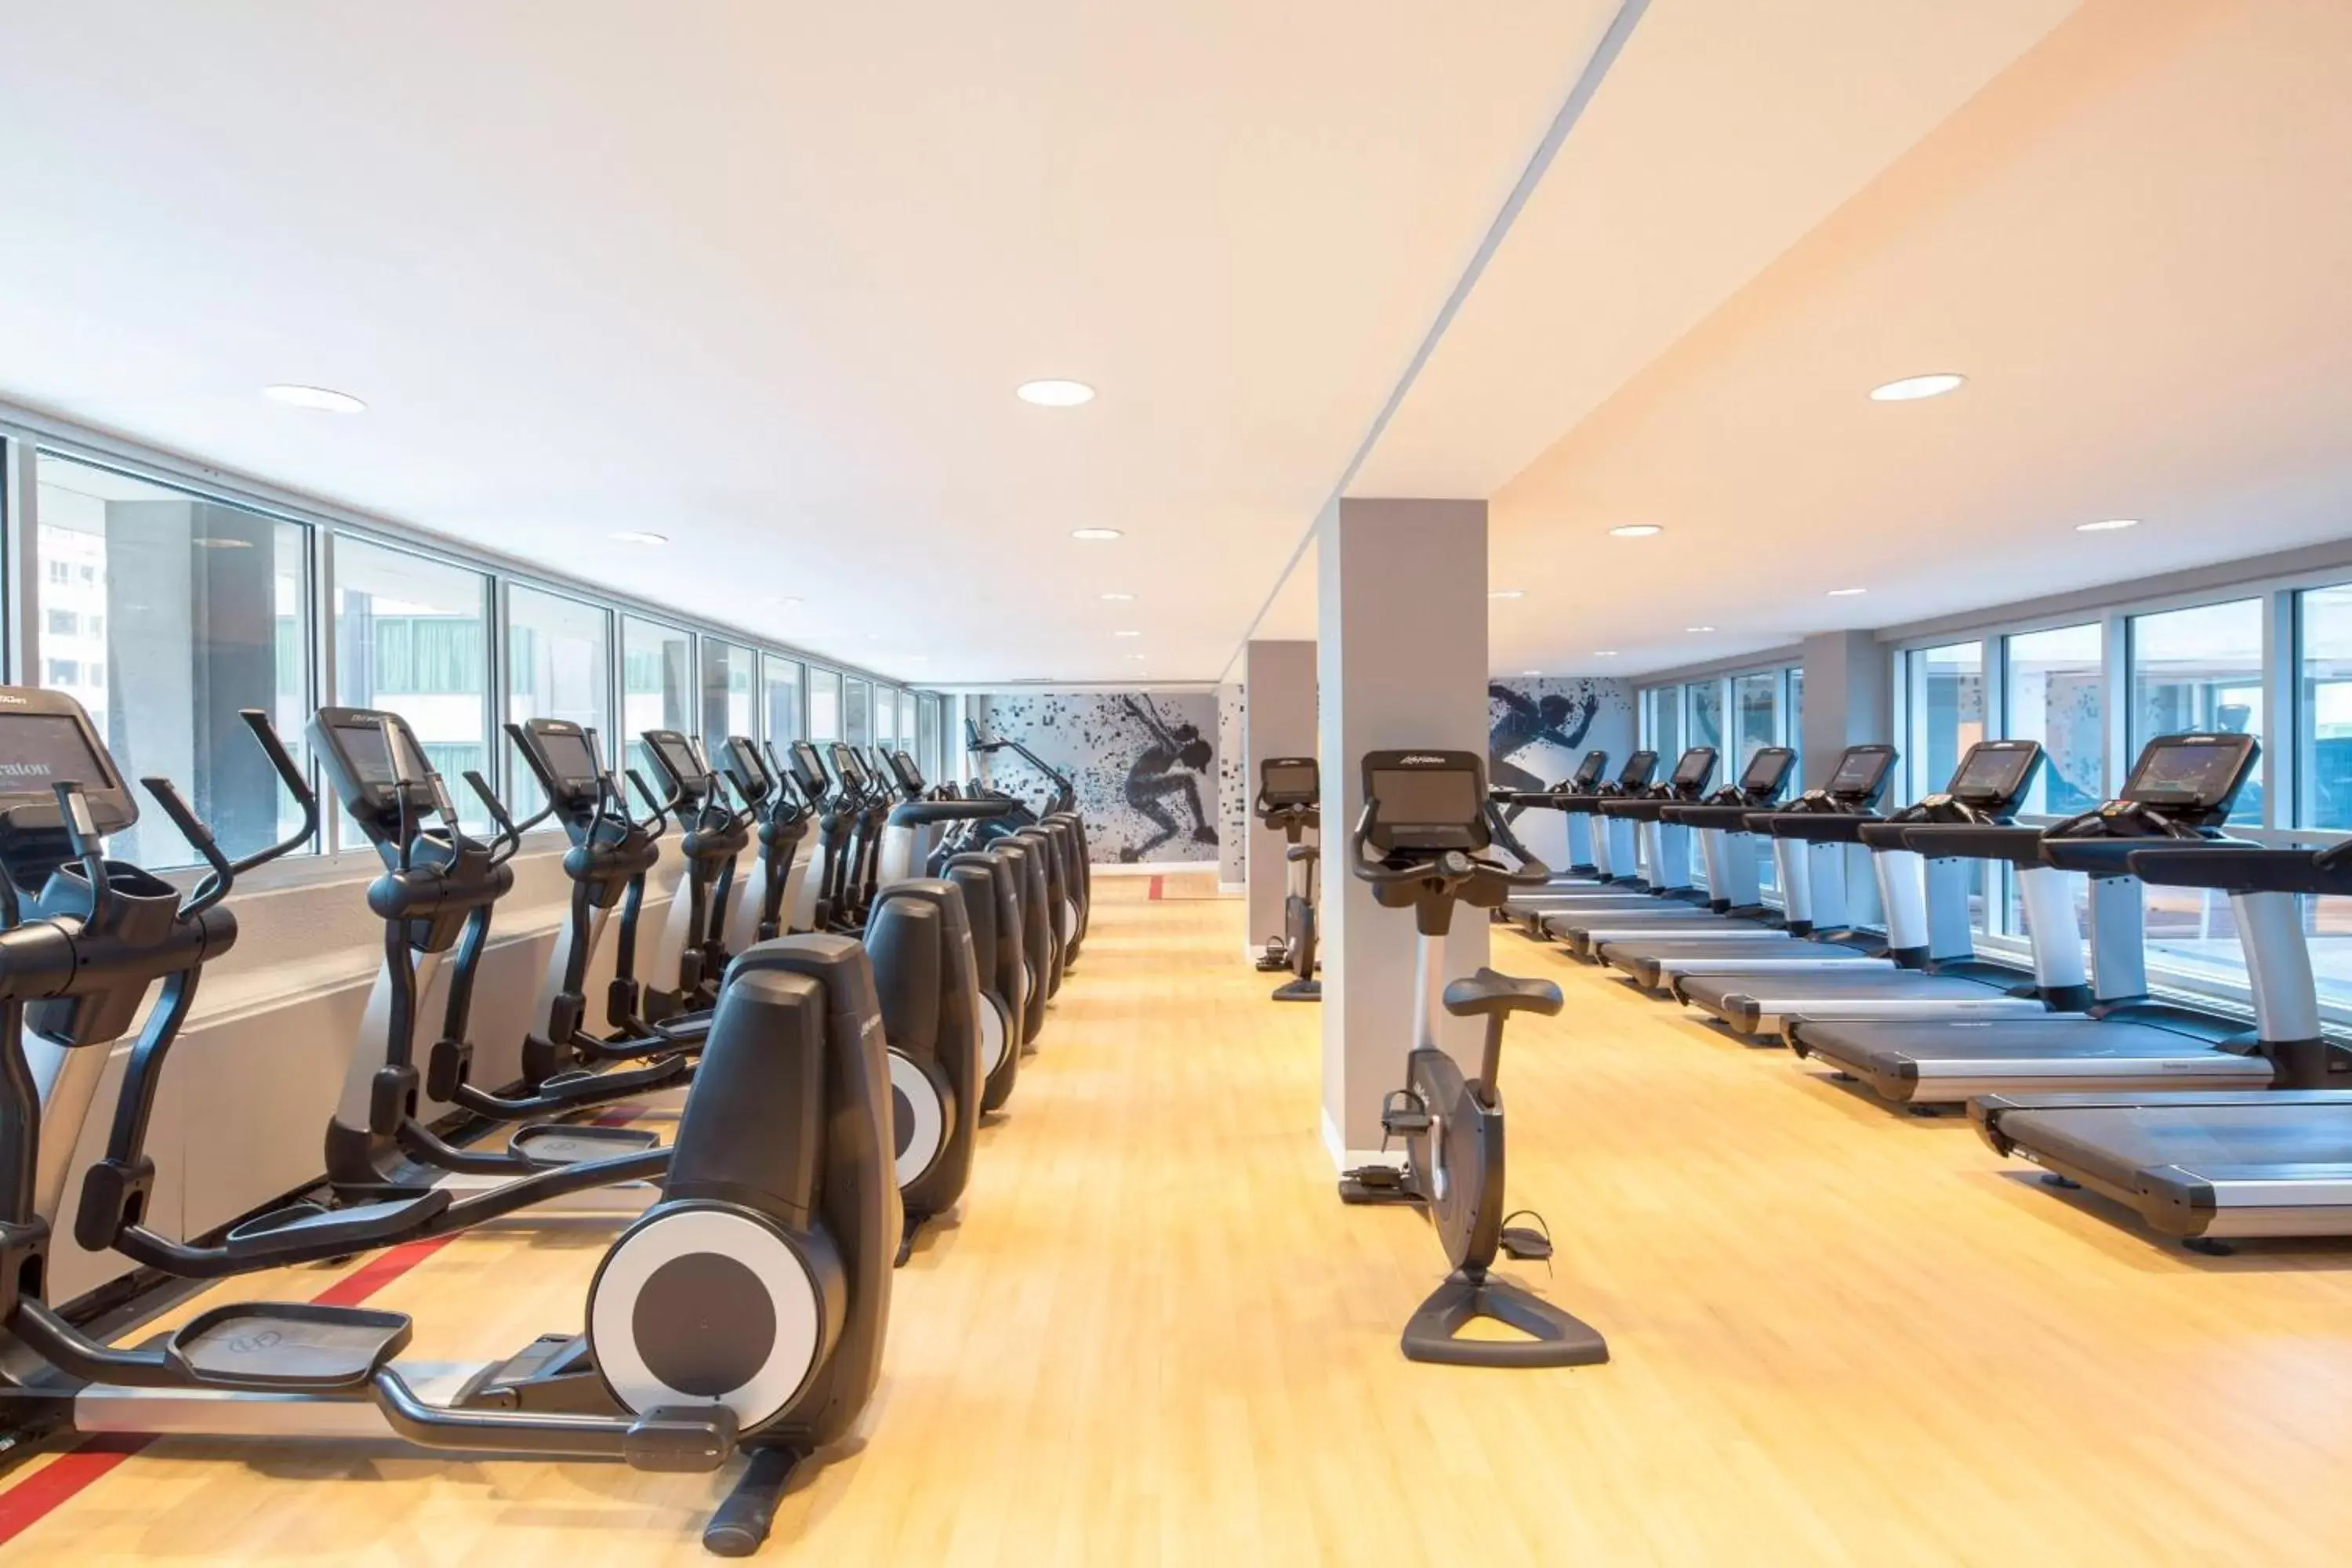 Fitness centre/facilities, Fitness Center/Facilities in Sheraton Boston Hotel